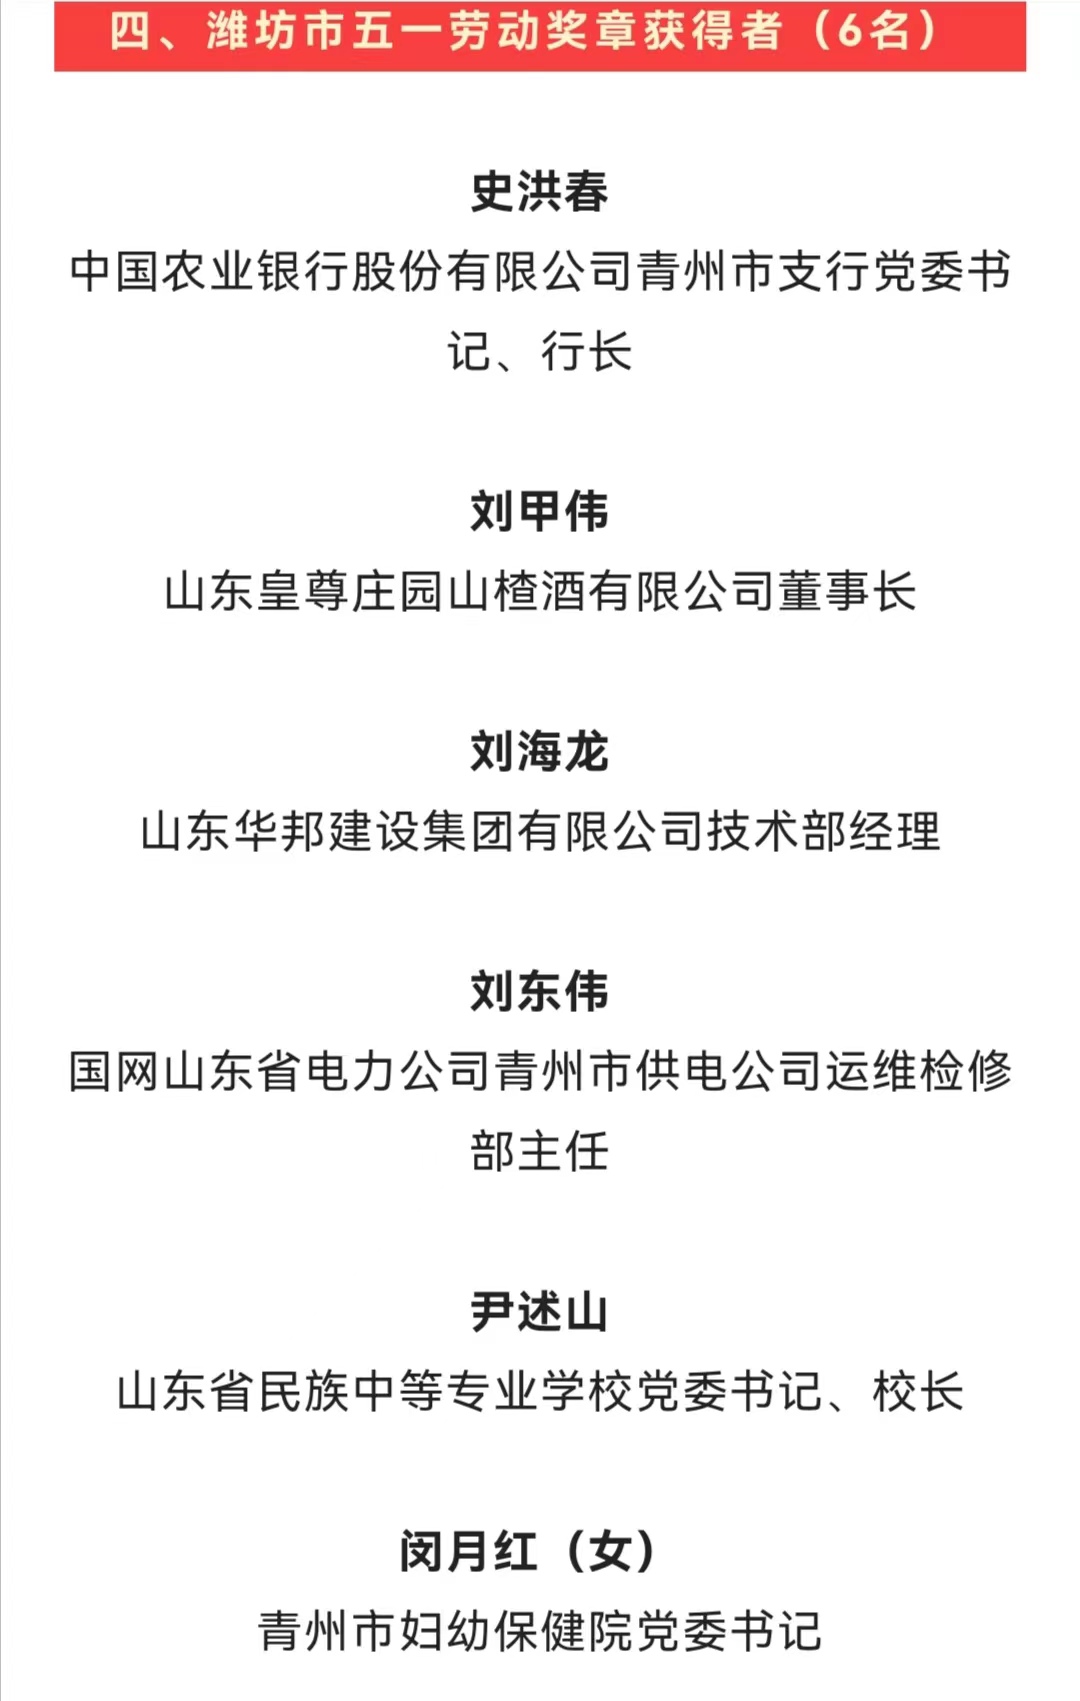 皇尊庄园董事长刘甲伟被授予“五一劳动奖章”